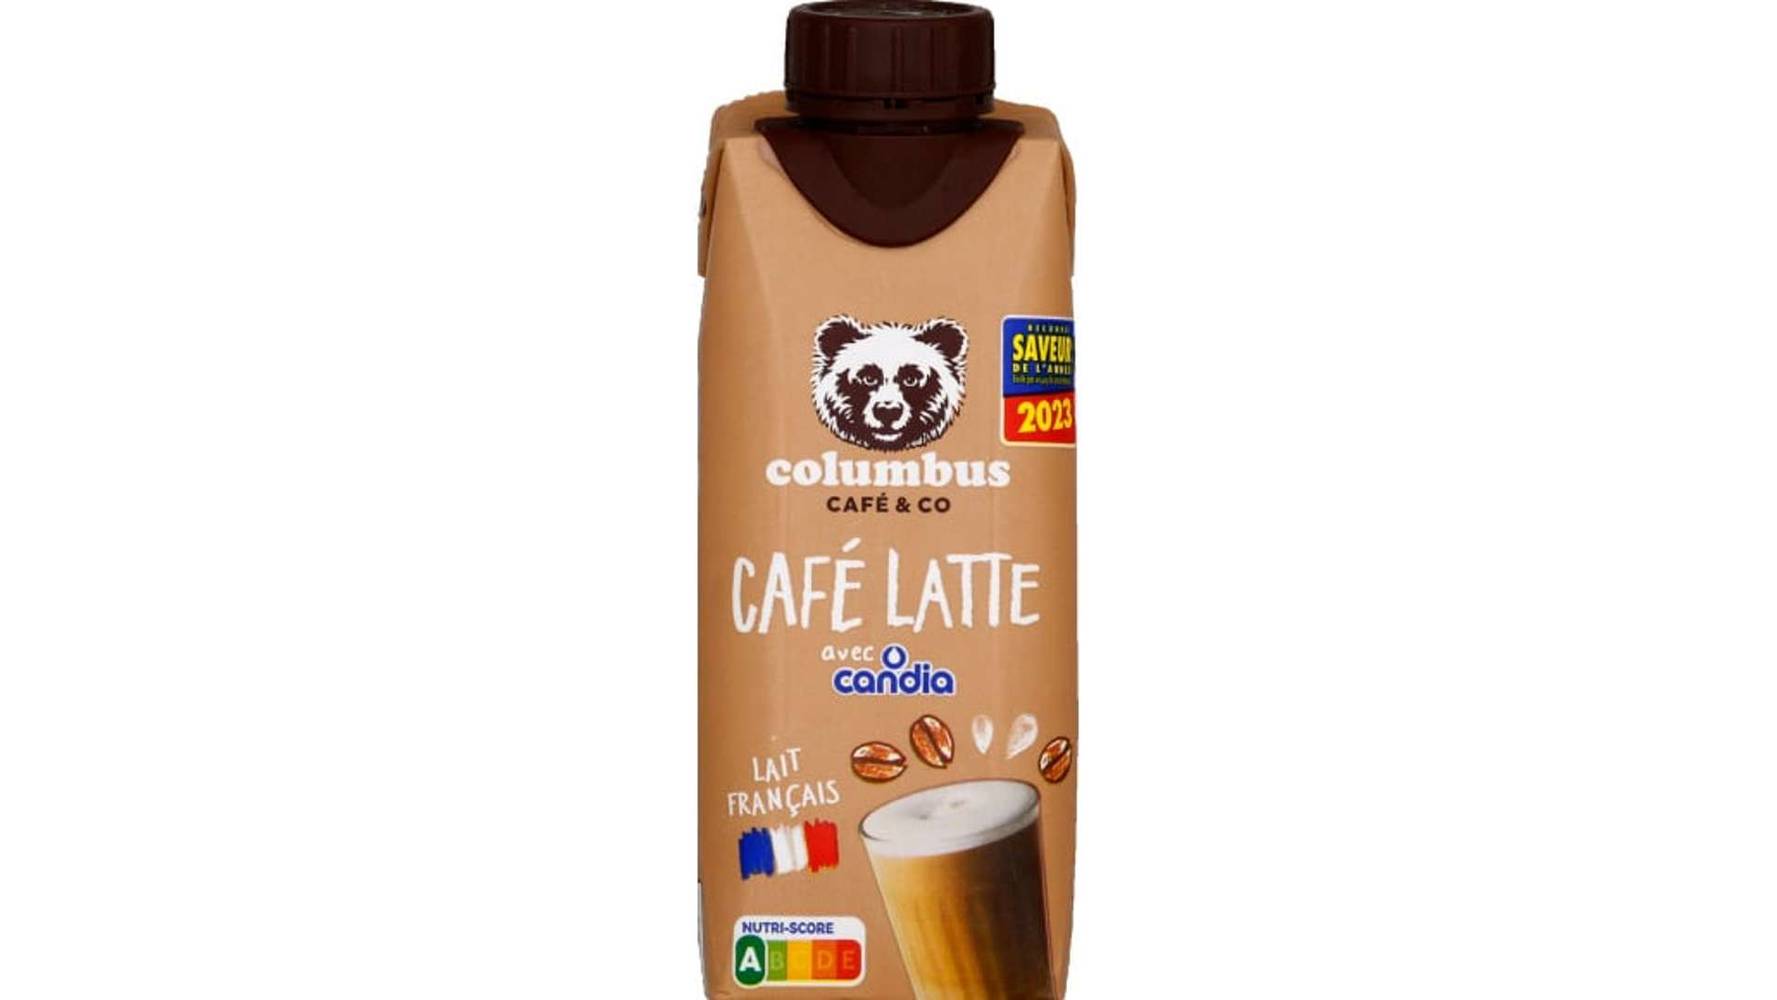 Candia - Boisson lactée café latte columbus (250 ml)